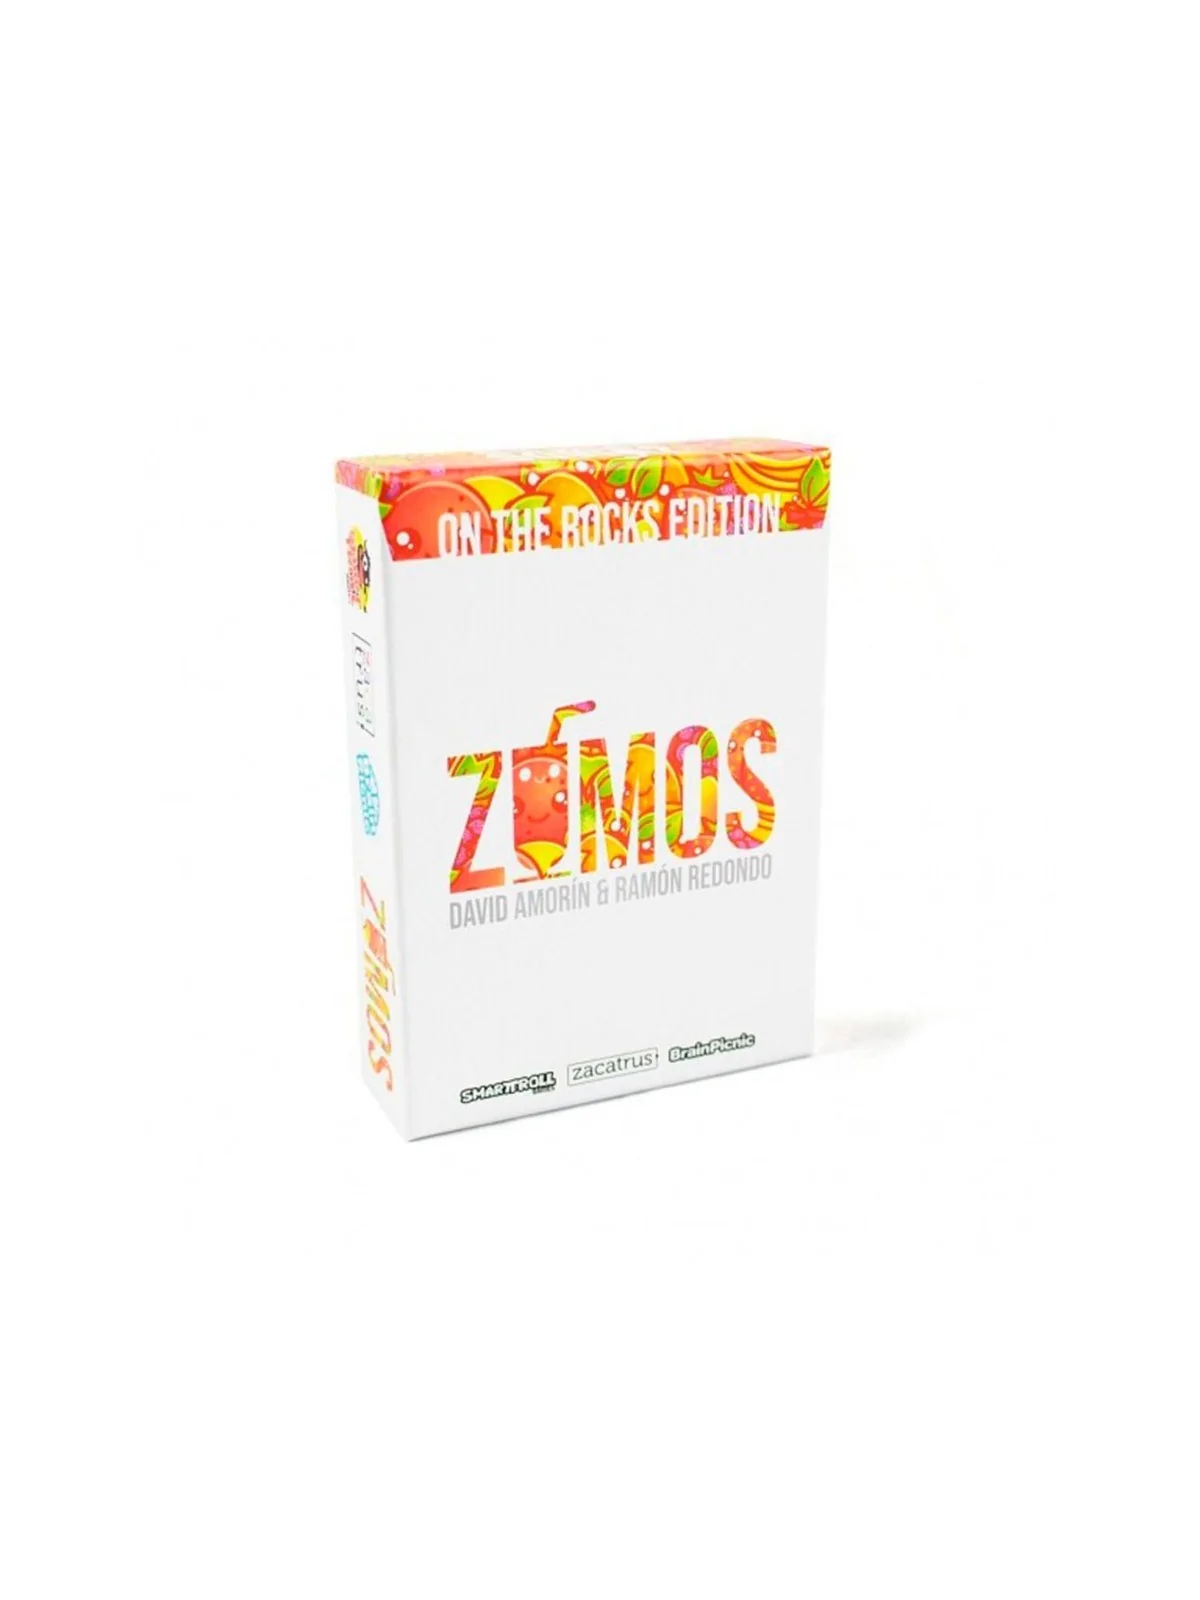 Comprar Zumos - On the Rocks Edition barato al mejor precio 8,95 € de 